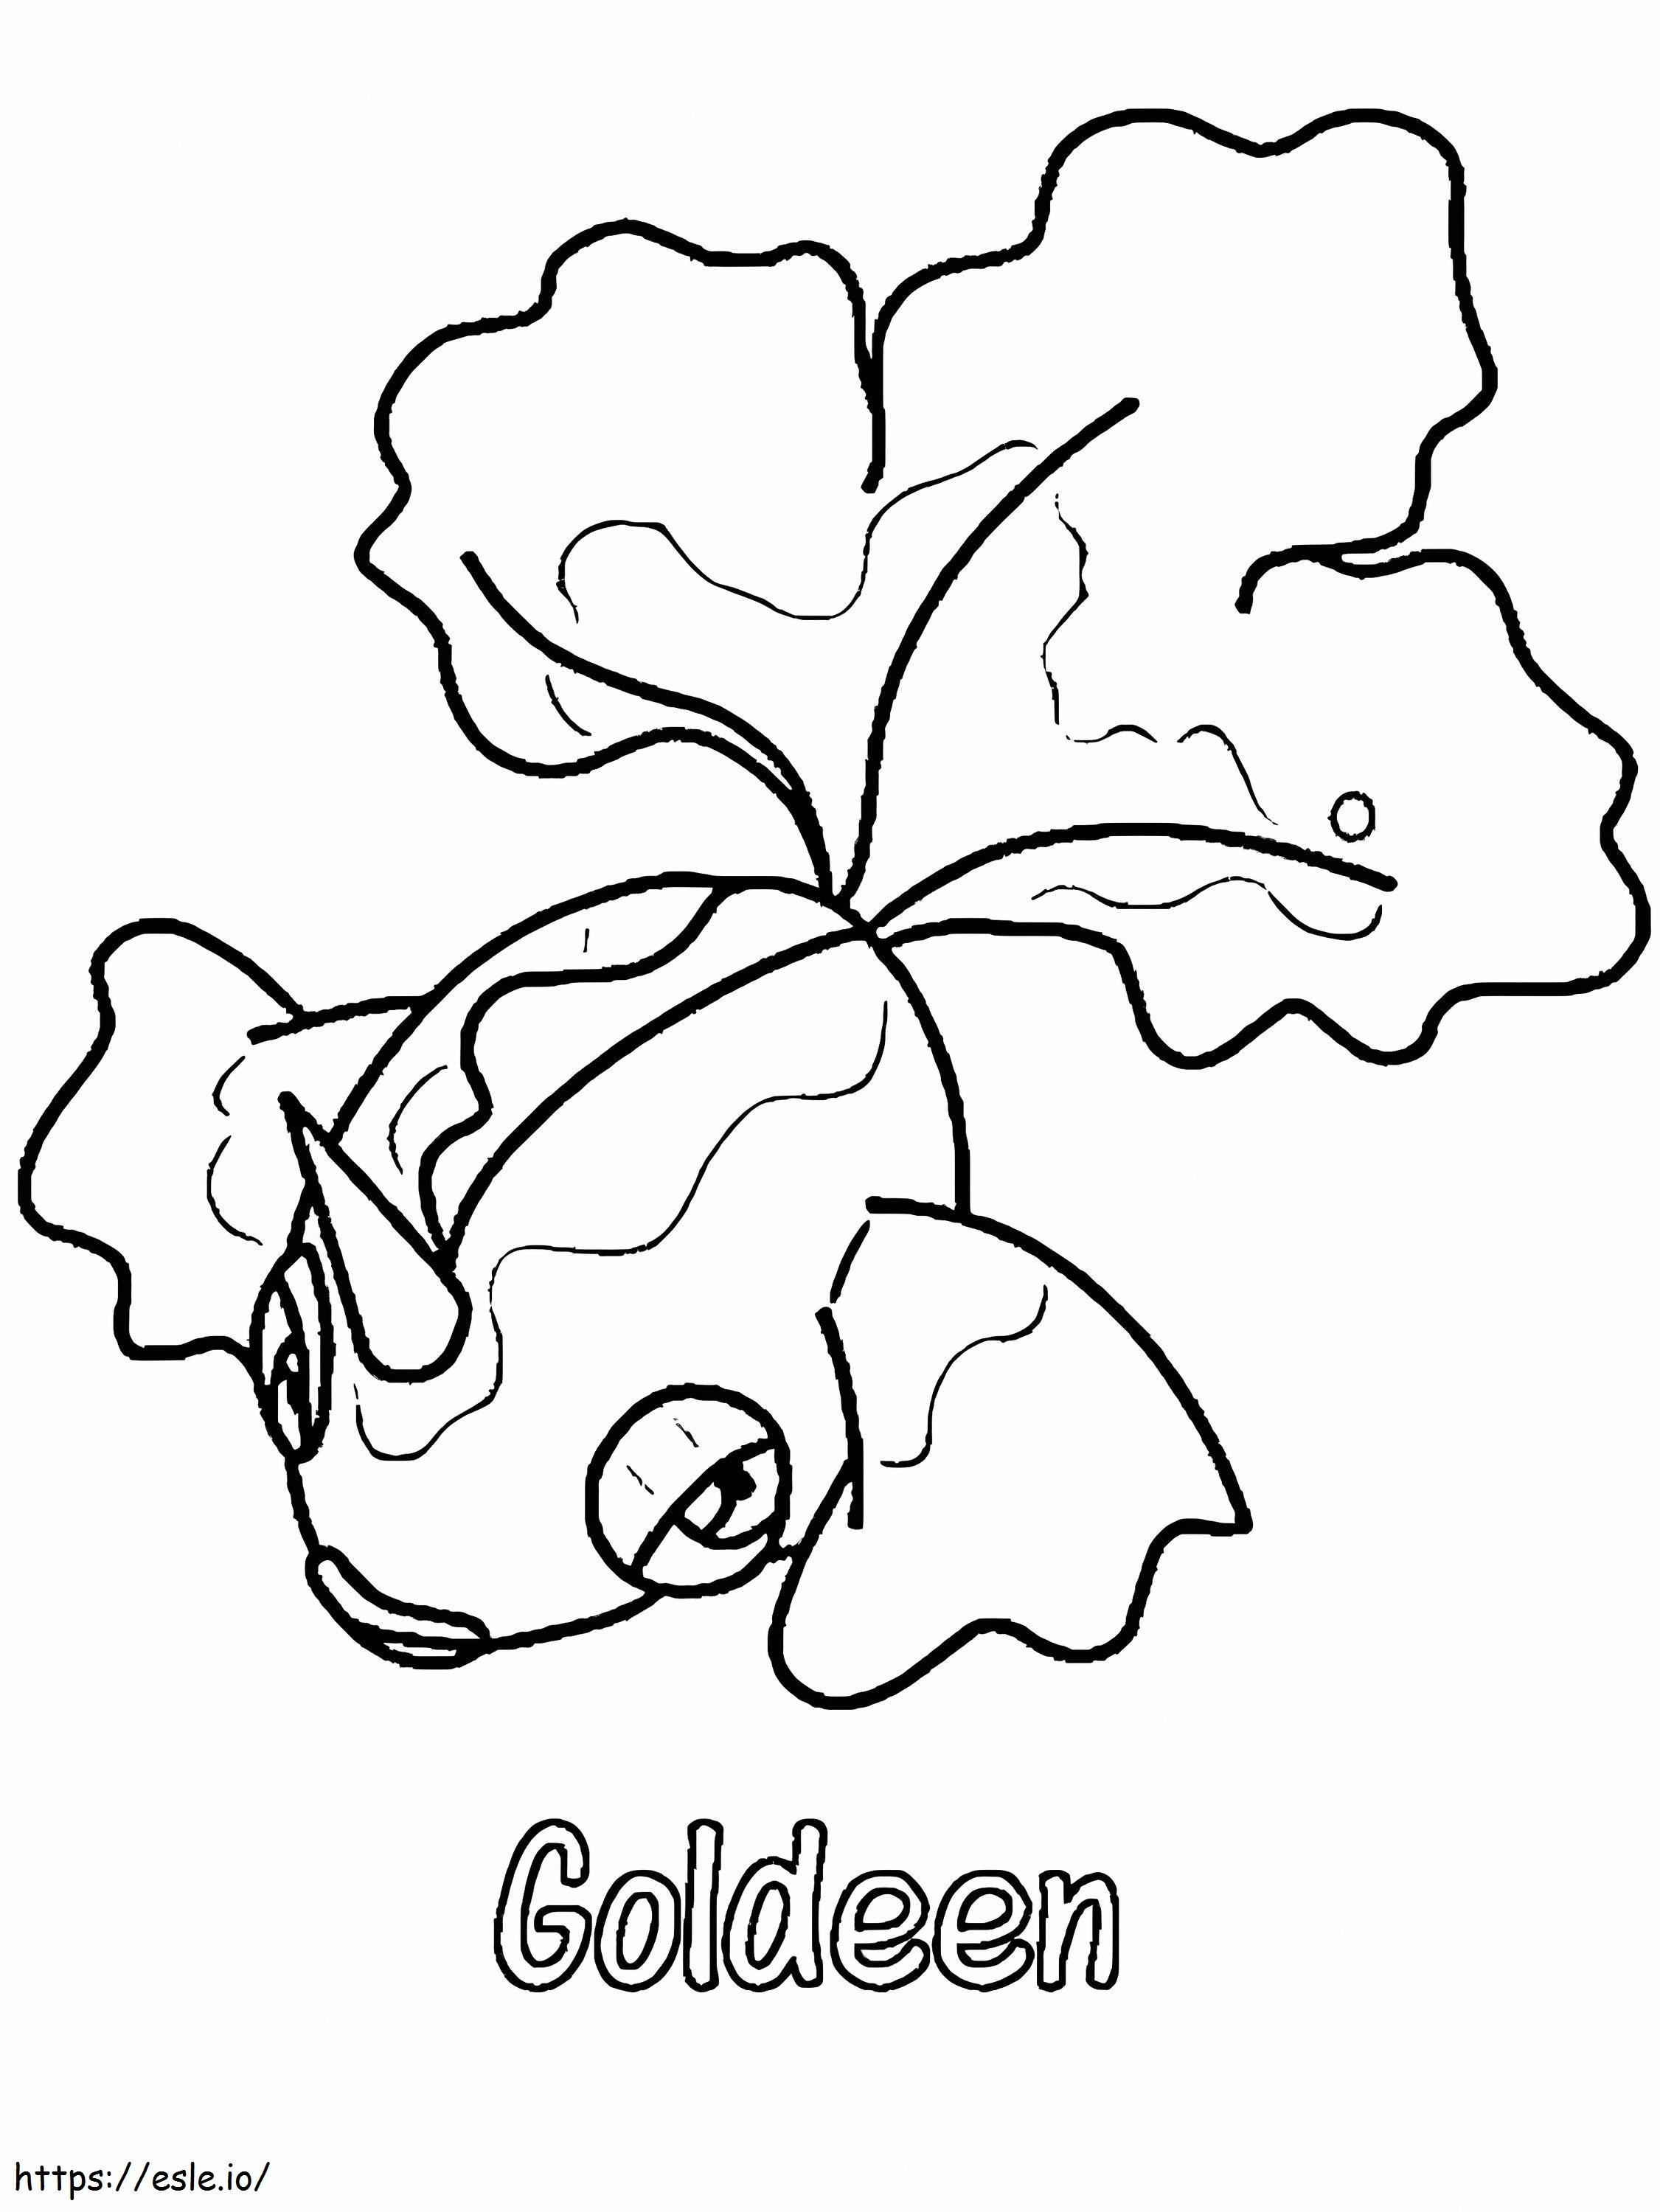 Gen 1 Pokemon Goldeen kleurplaat kleurplaat